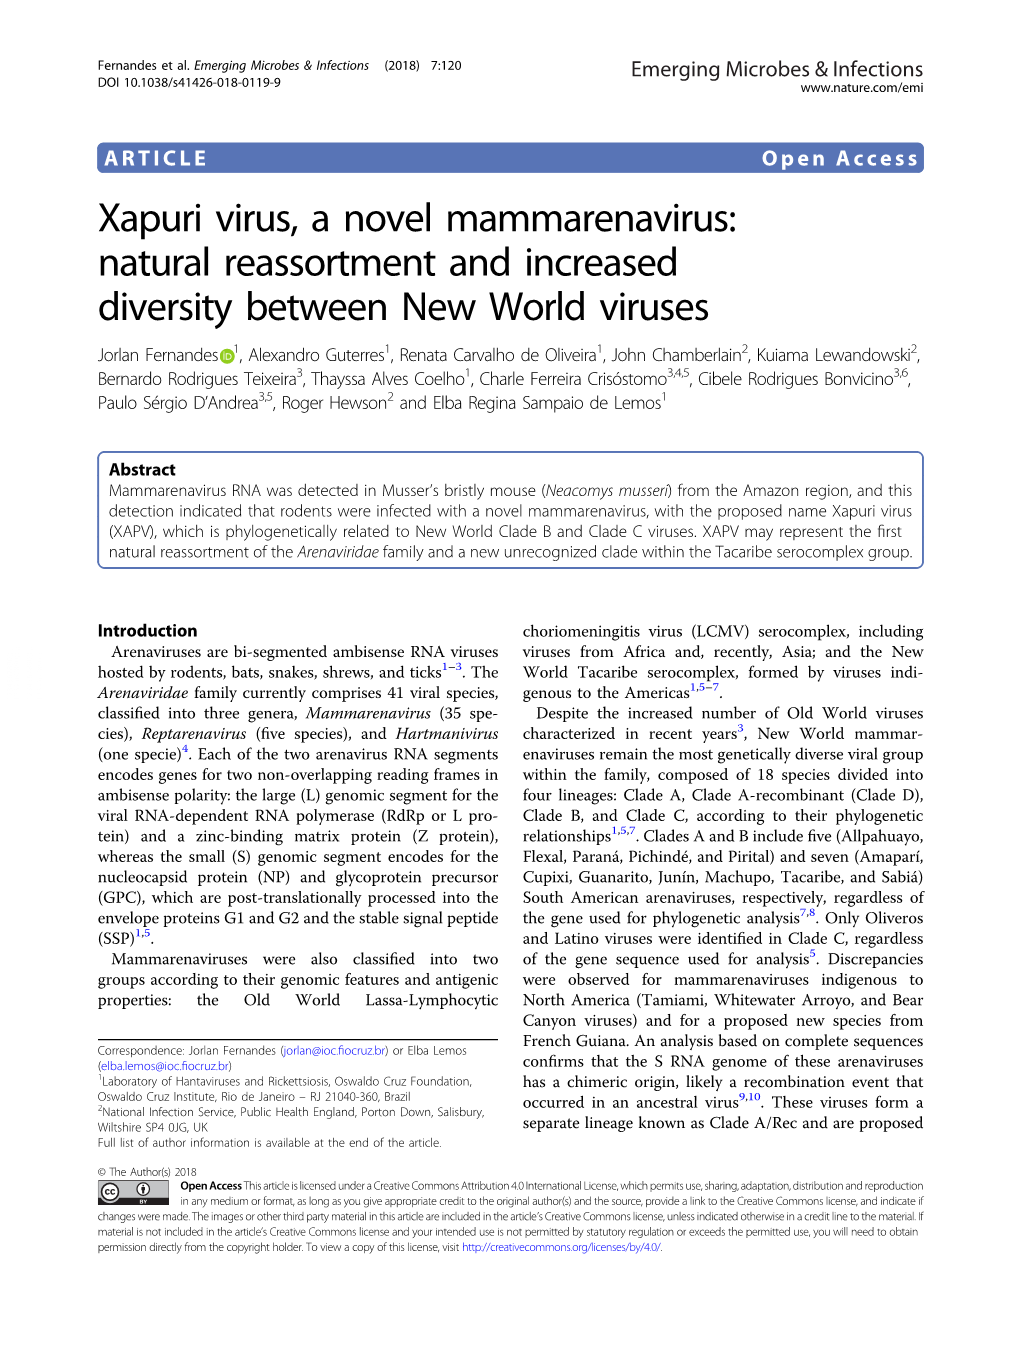 Xapuri Virus, a Novel Mammarenavirus: Natural Reassortment and Increased Diversity Between New World Viruses